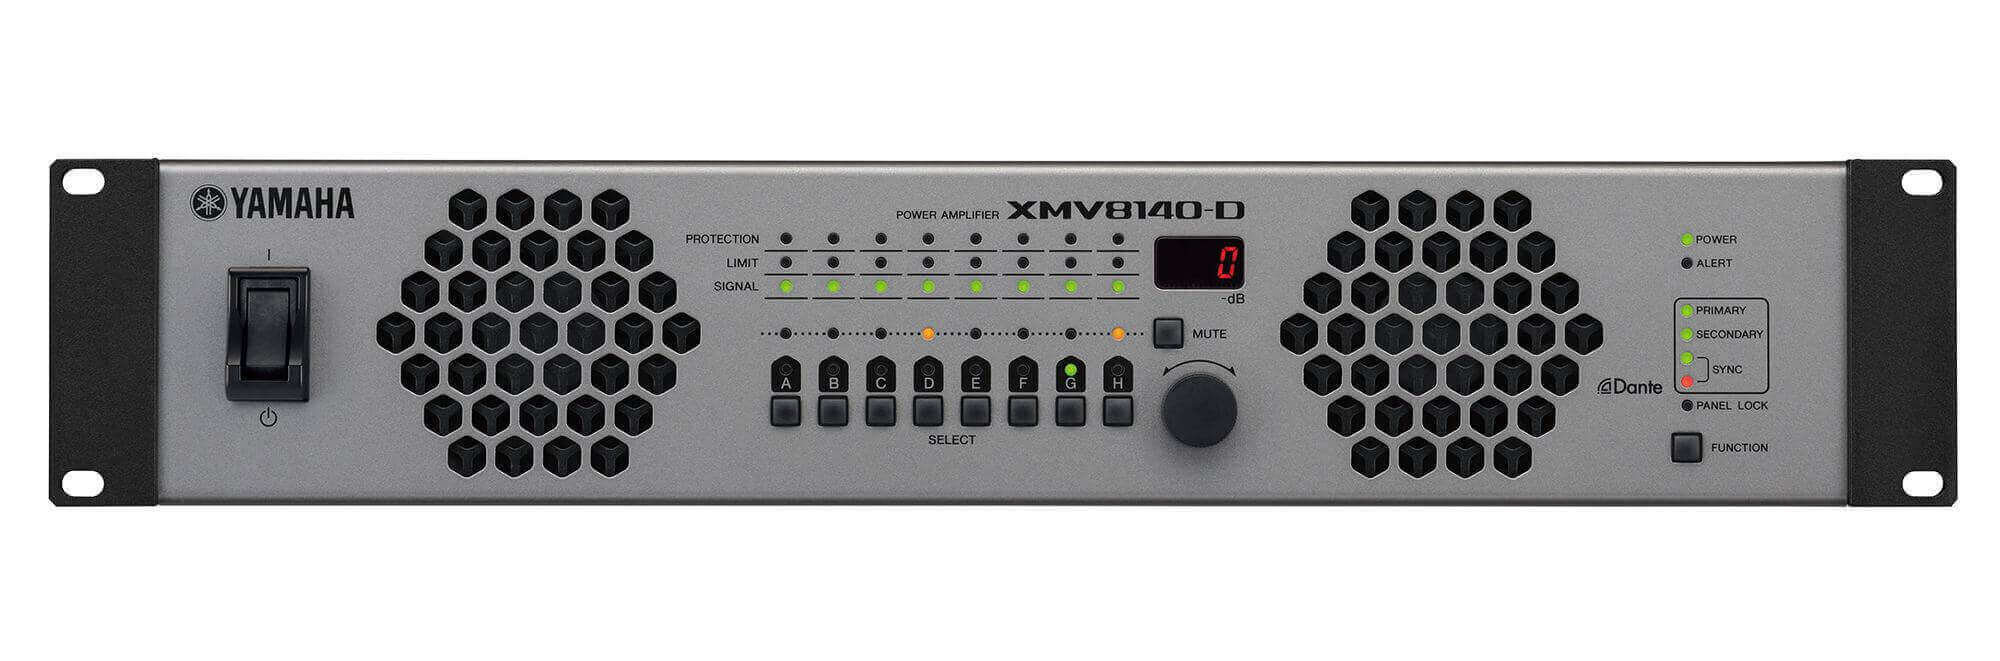 XMV8140-D